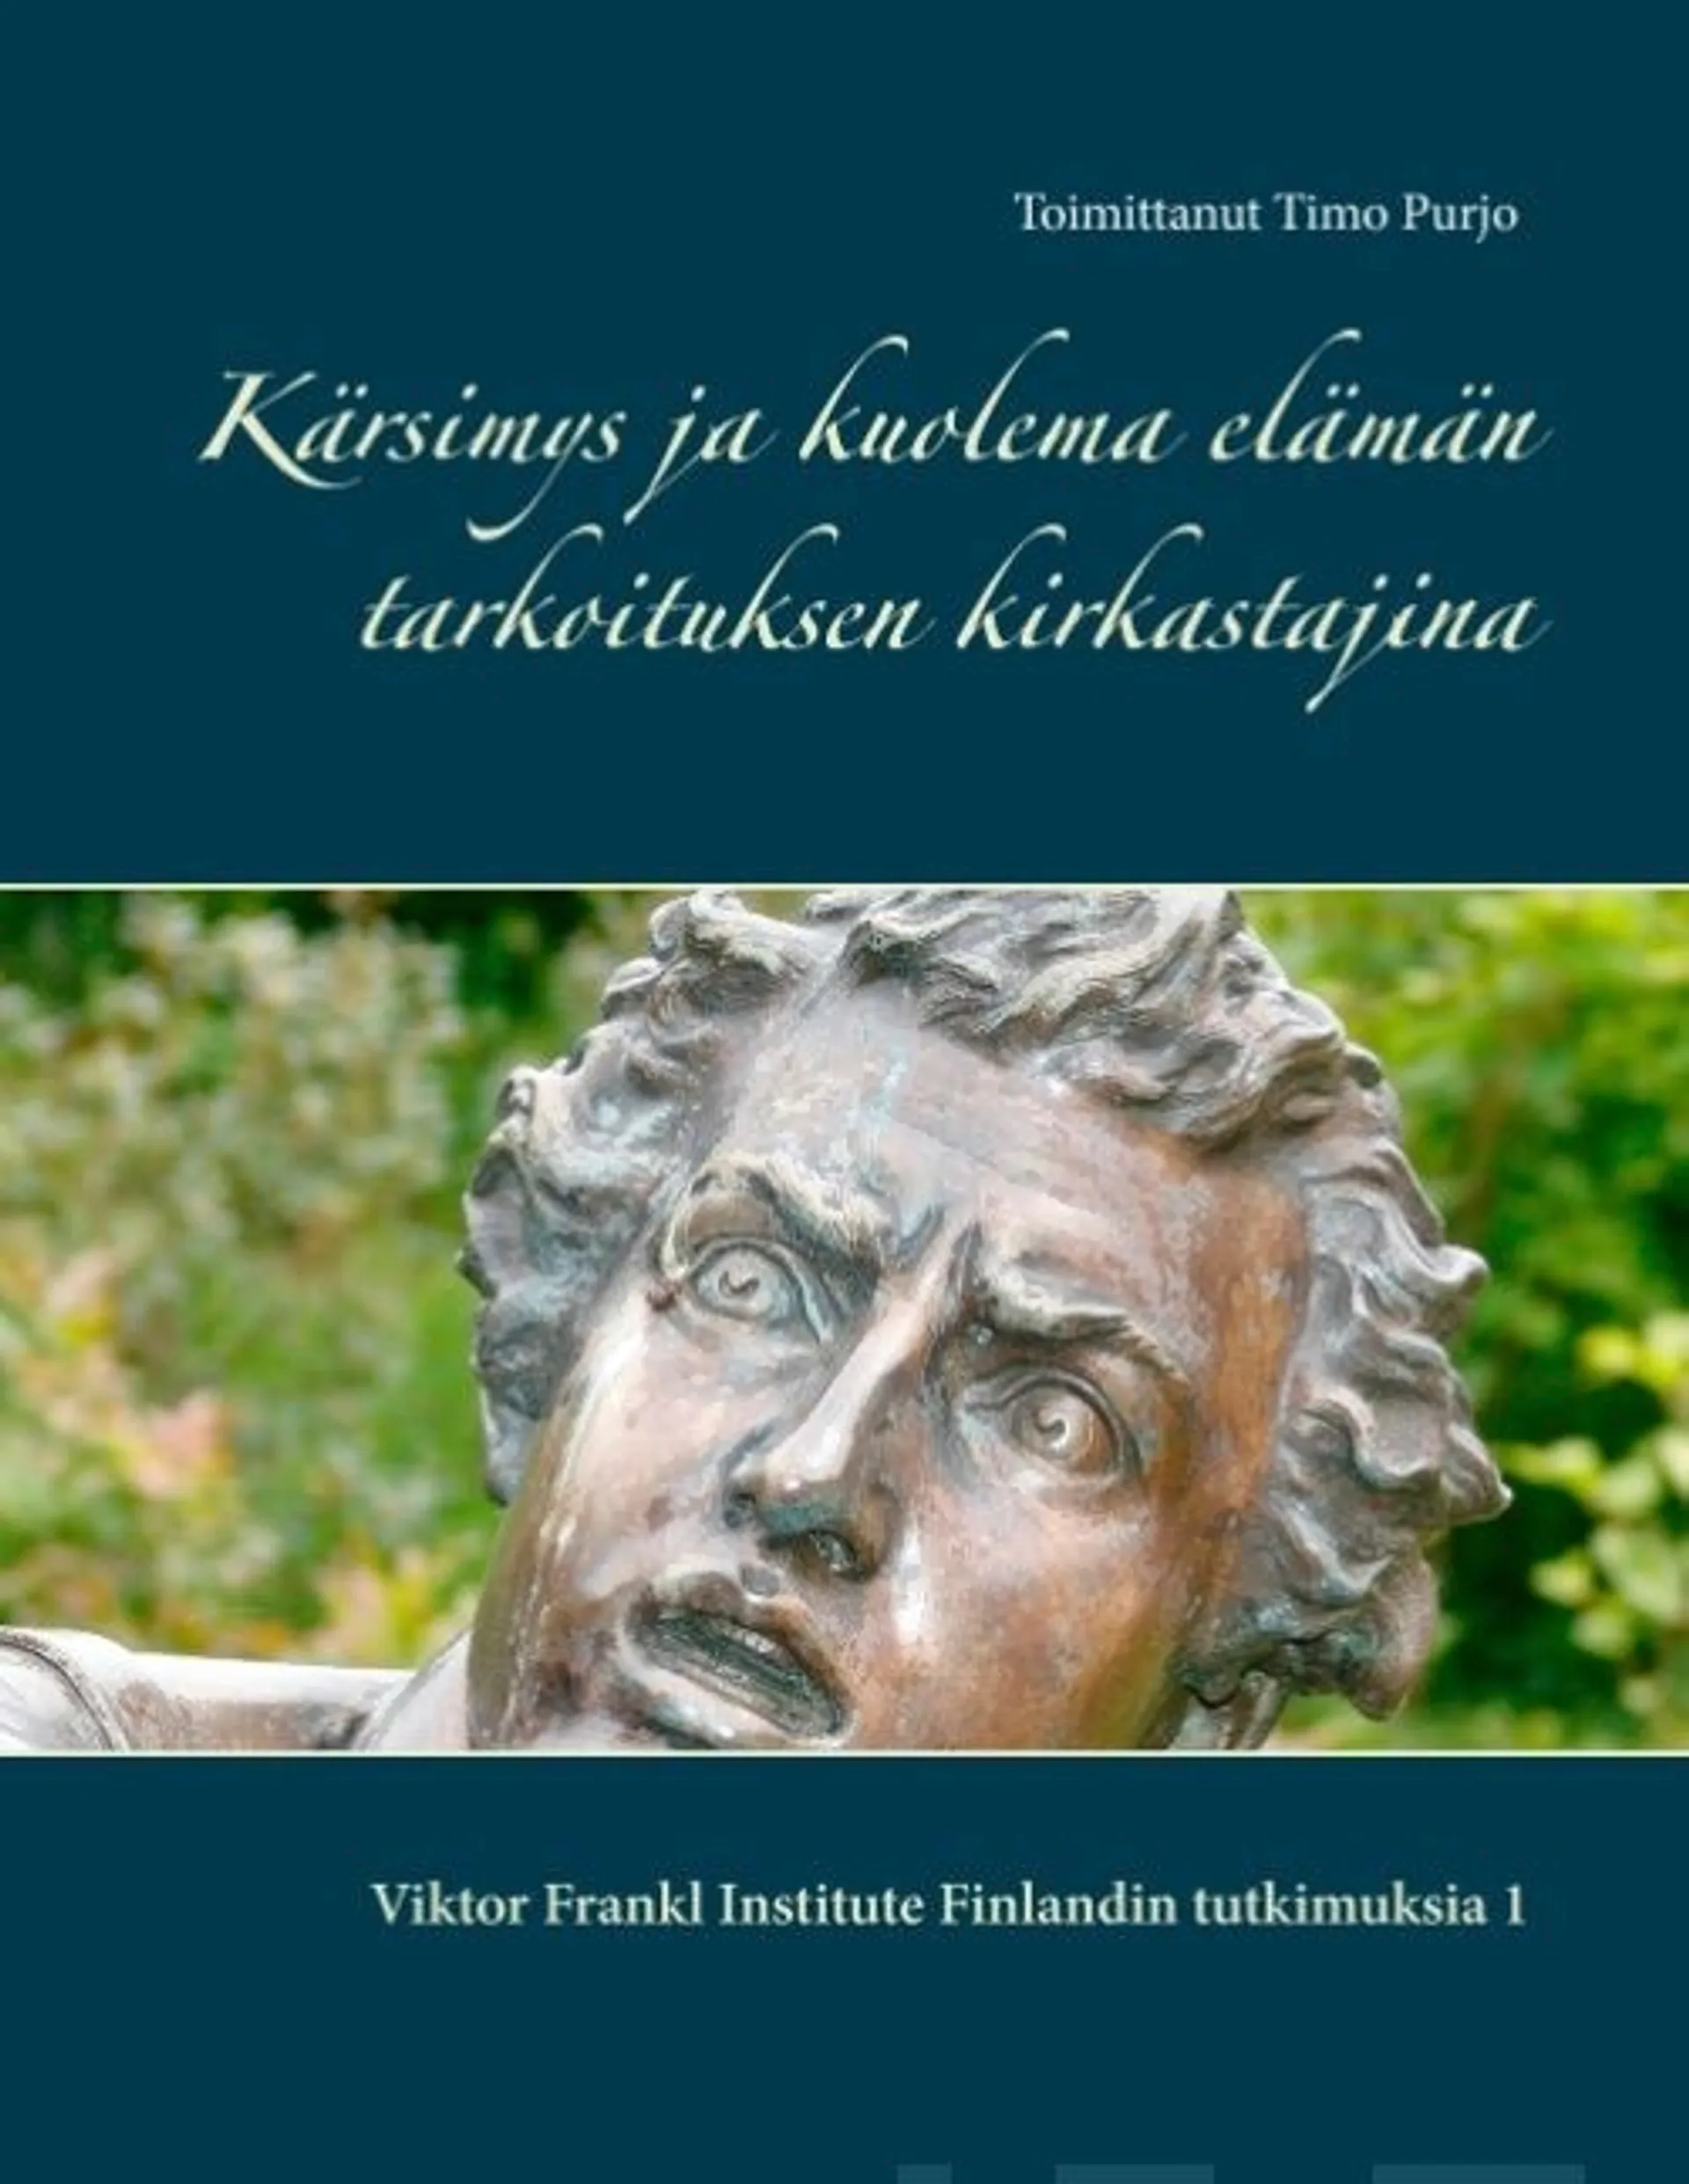 Kärsimys ja kuolema elämän tarkoituksen kirkastajina - Viktor Frankl Institute Finlandin tutkimuksia 1